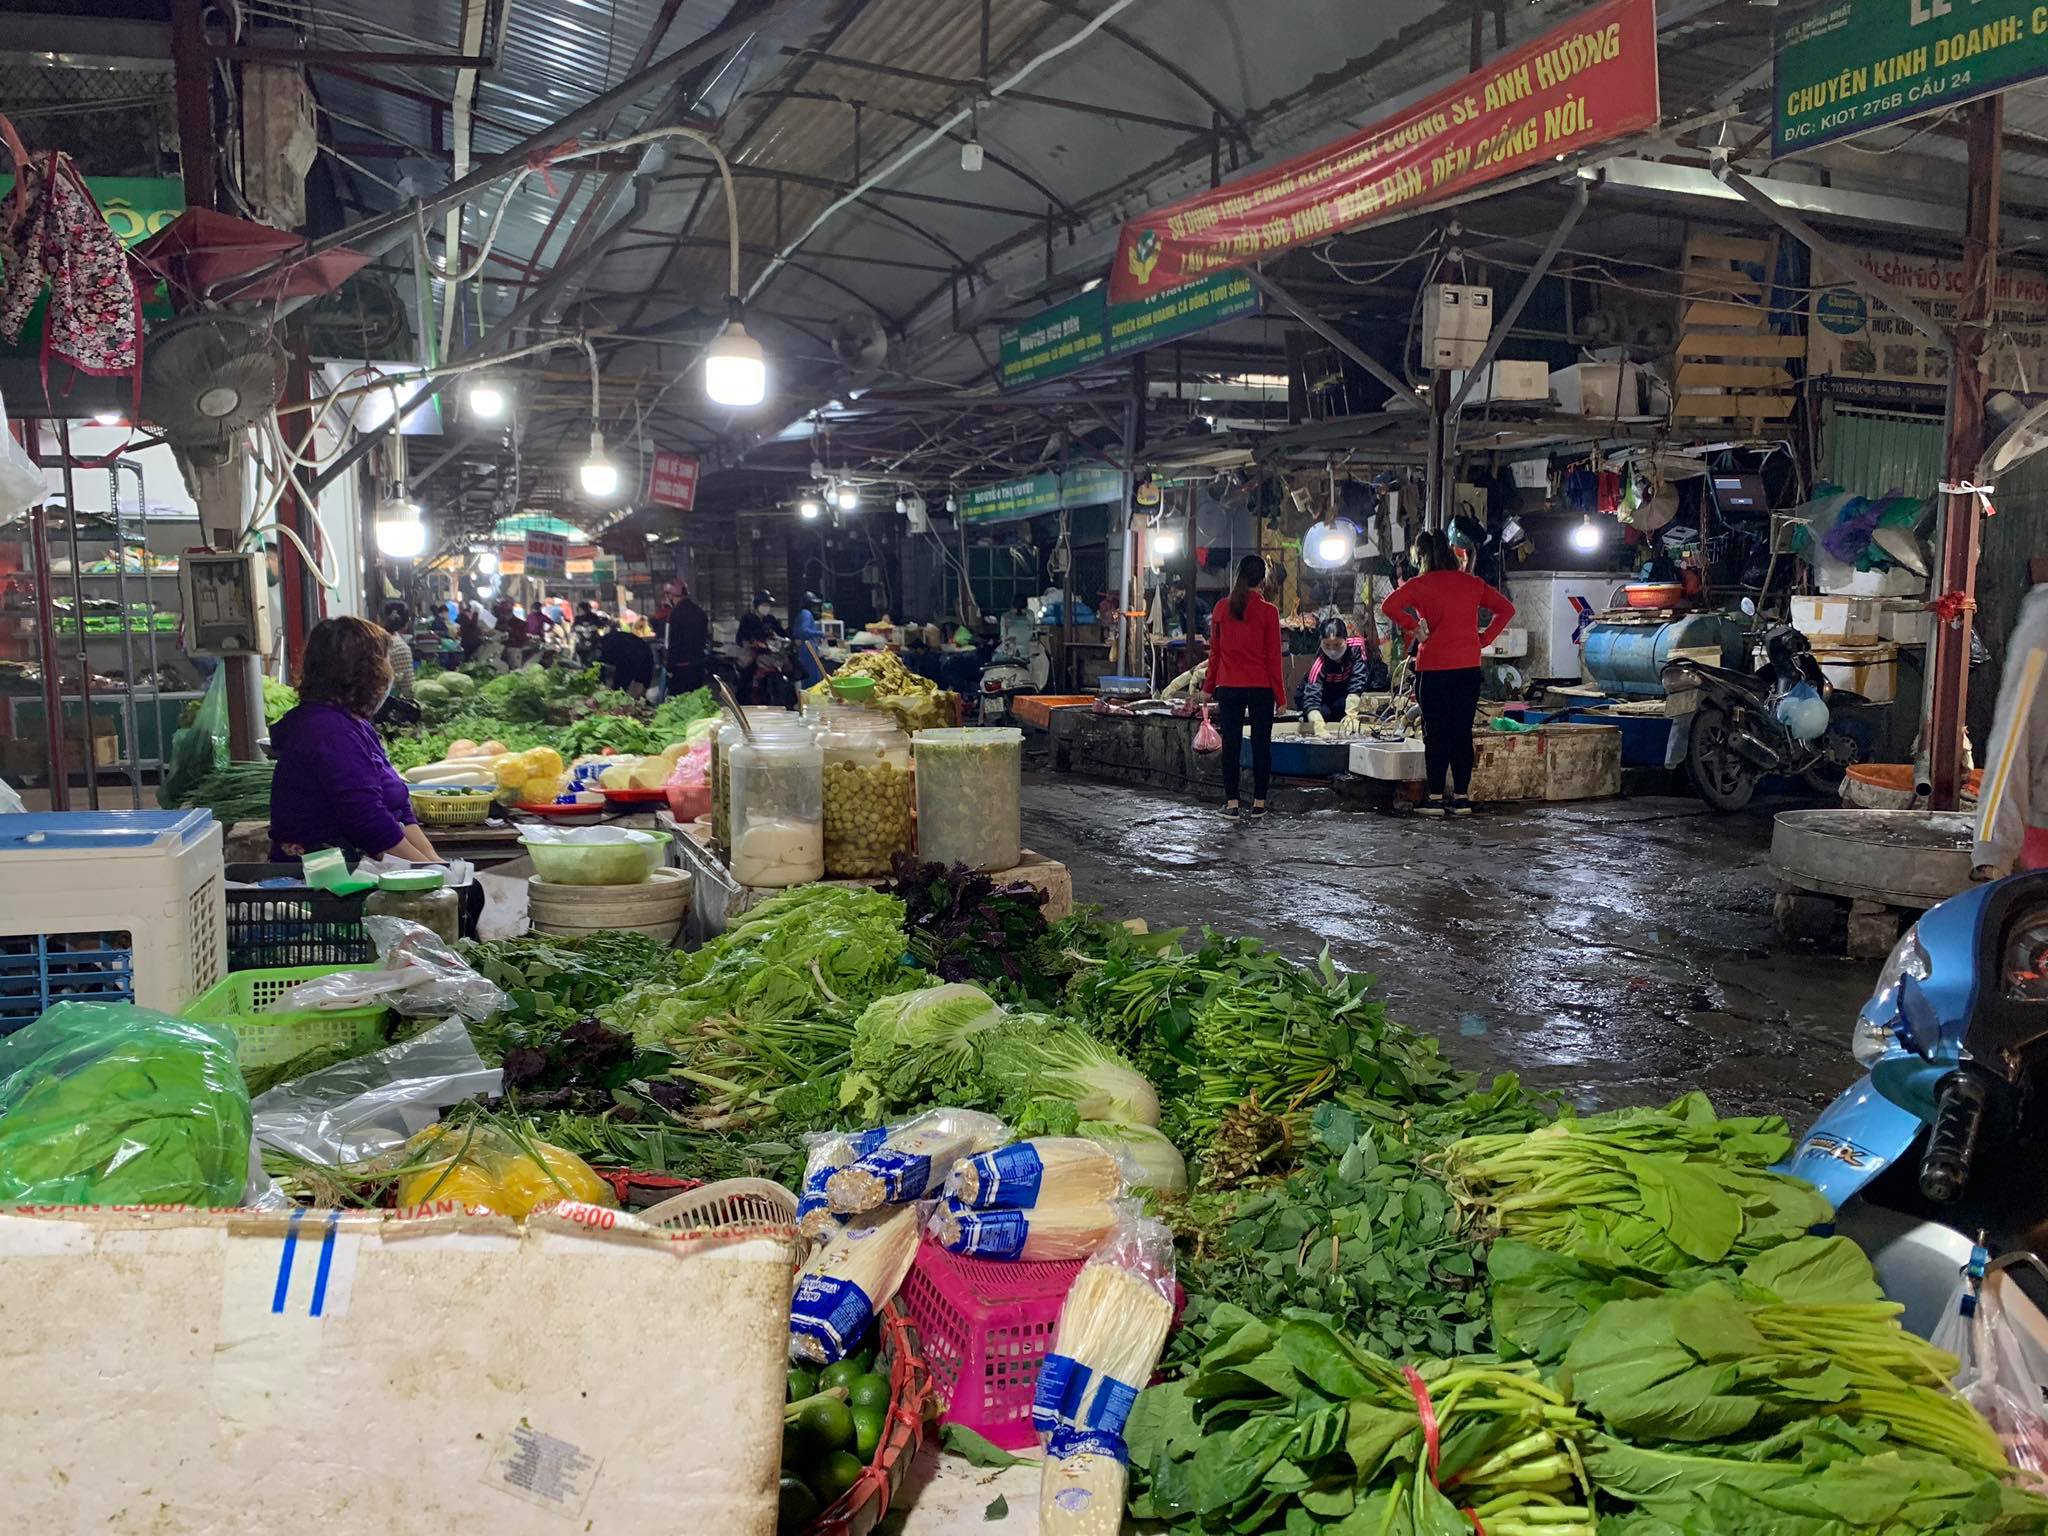 Quầy rau có đầy đủ các loại nhưng không có cảnh nhộn nhịp bán mua như mọi ngày, dù đang vào giờ cao điểm của khách đi chợ